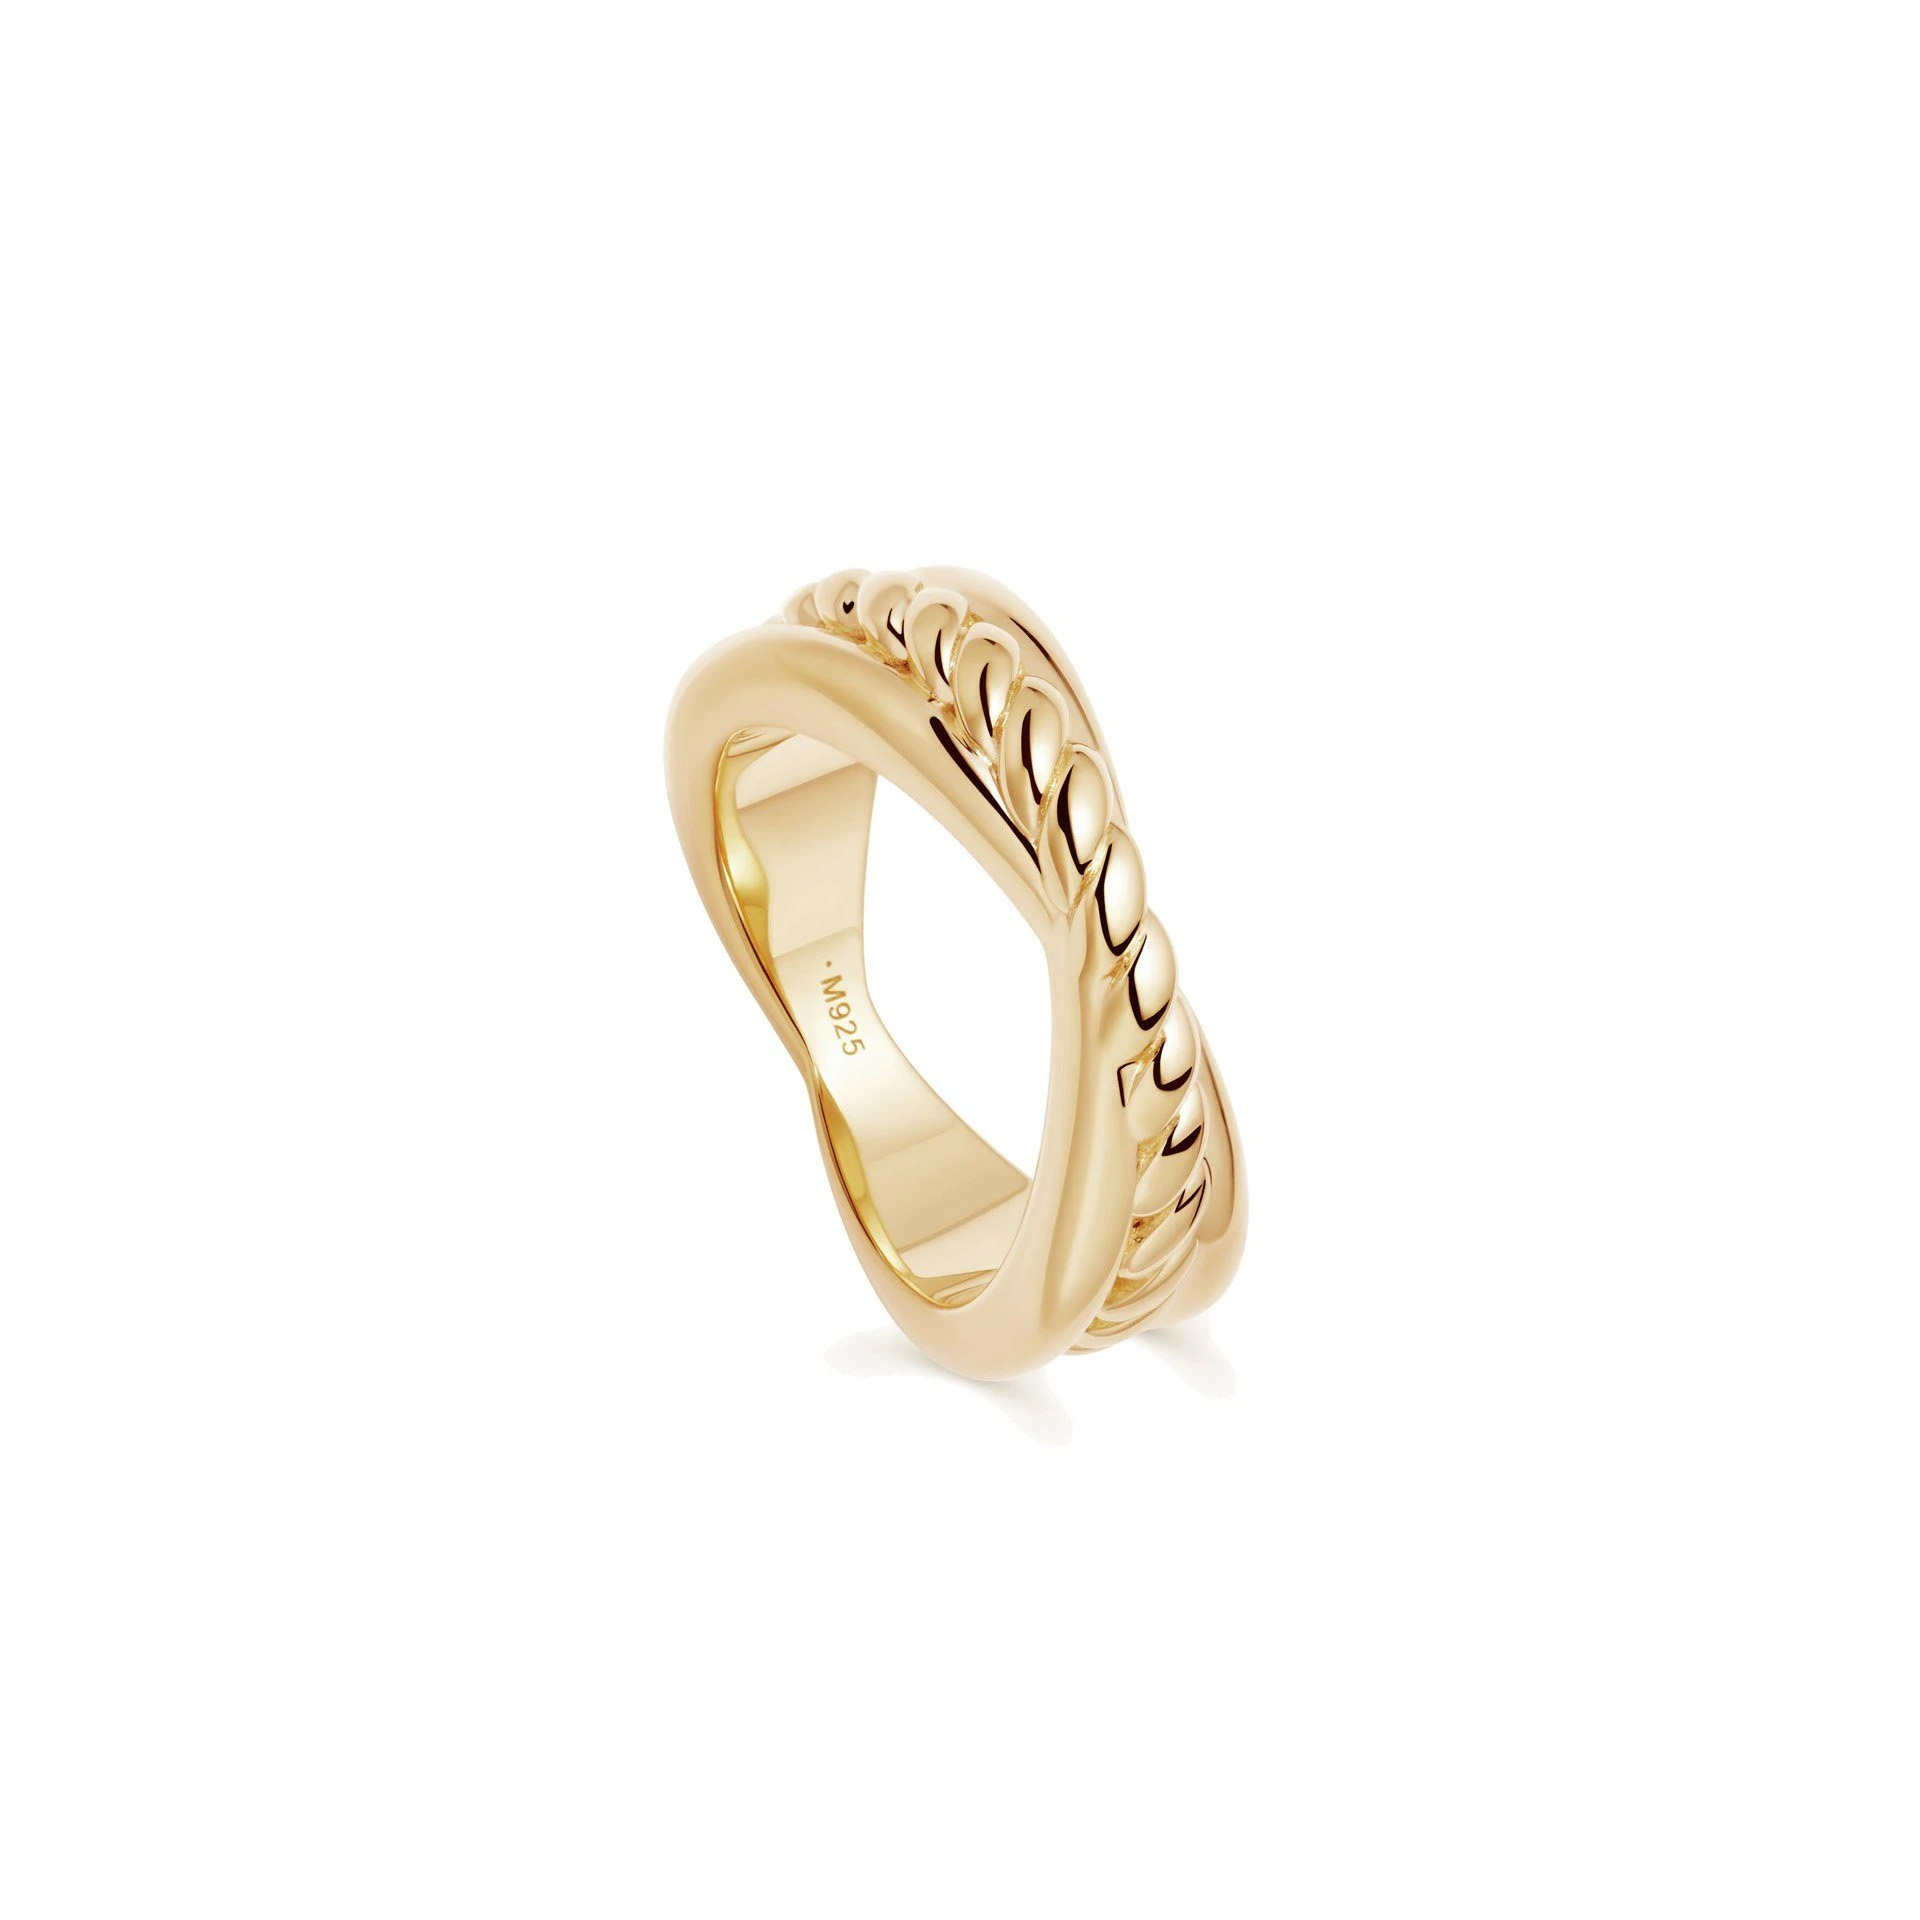 Оптовое OEM-кольцо выполнено в ювелирном дизайне OEM/ODM и изготовлено из 18-каратного позолоченного золота.